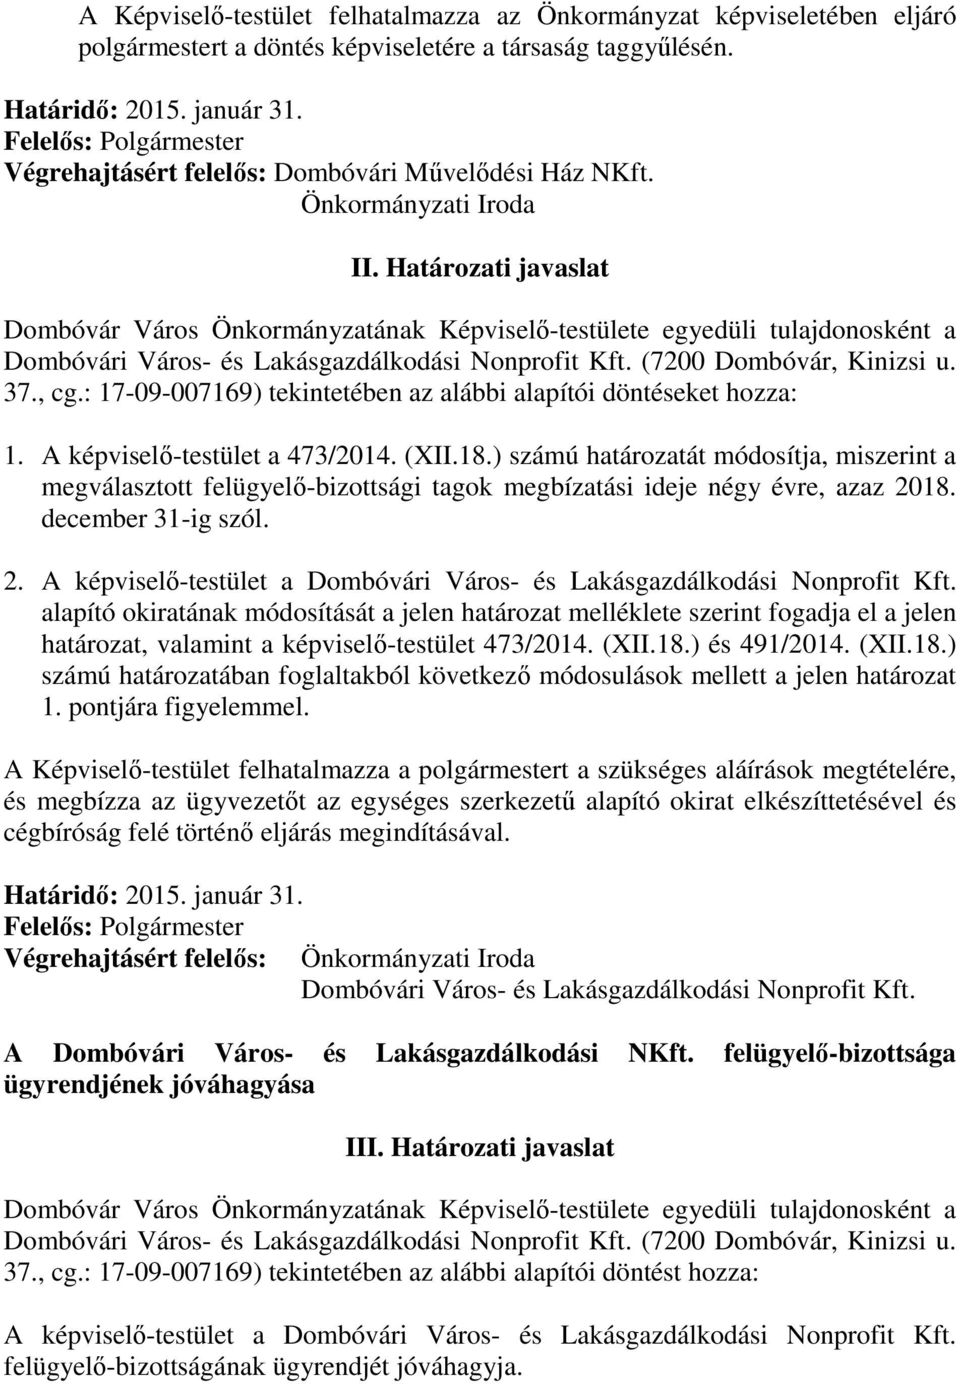 Határozati javaslat Dombóvár Város Önkormányzatának Képviselő-testülete egyedüli tulajdonosként a Dombóvári Város- és Lakásgazdálkodási Nonprofit Kft. (7200 Dombóvár, Kinizsi u. 37., cg.